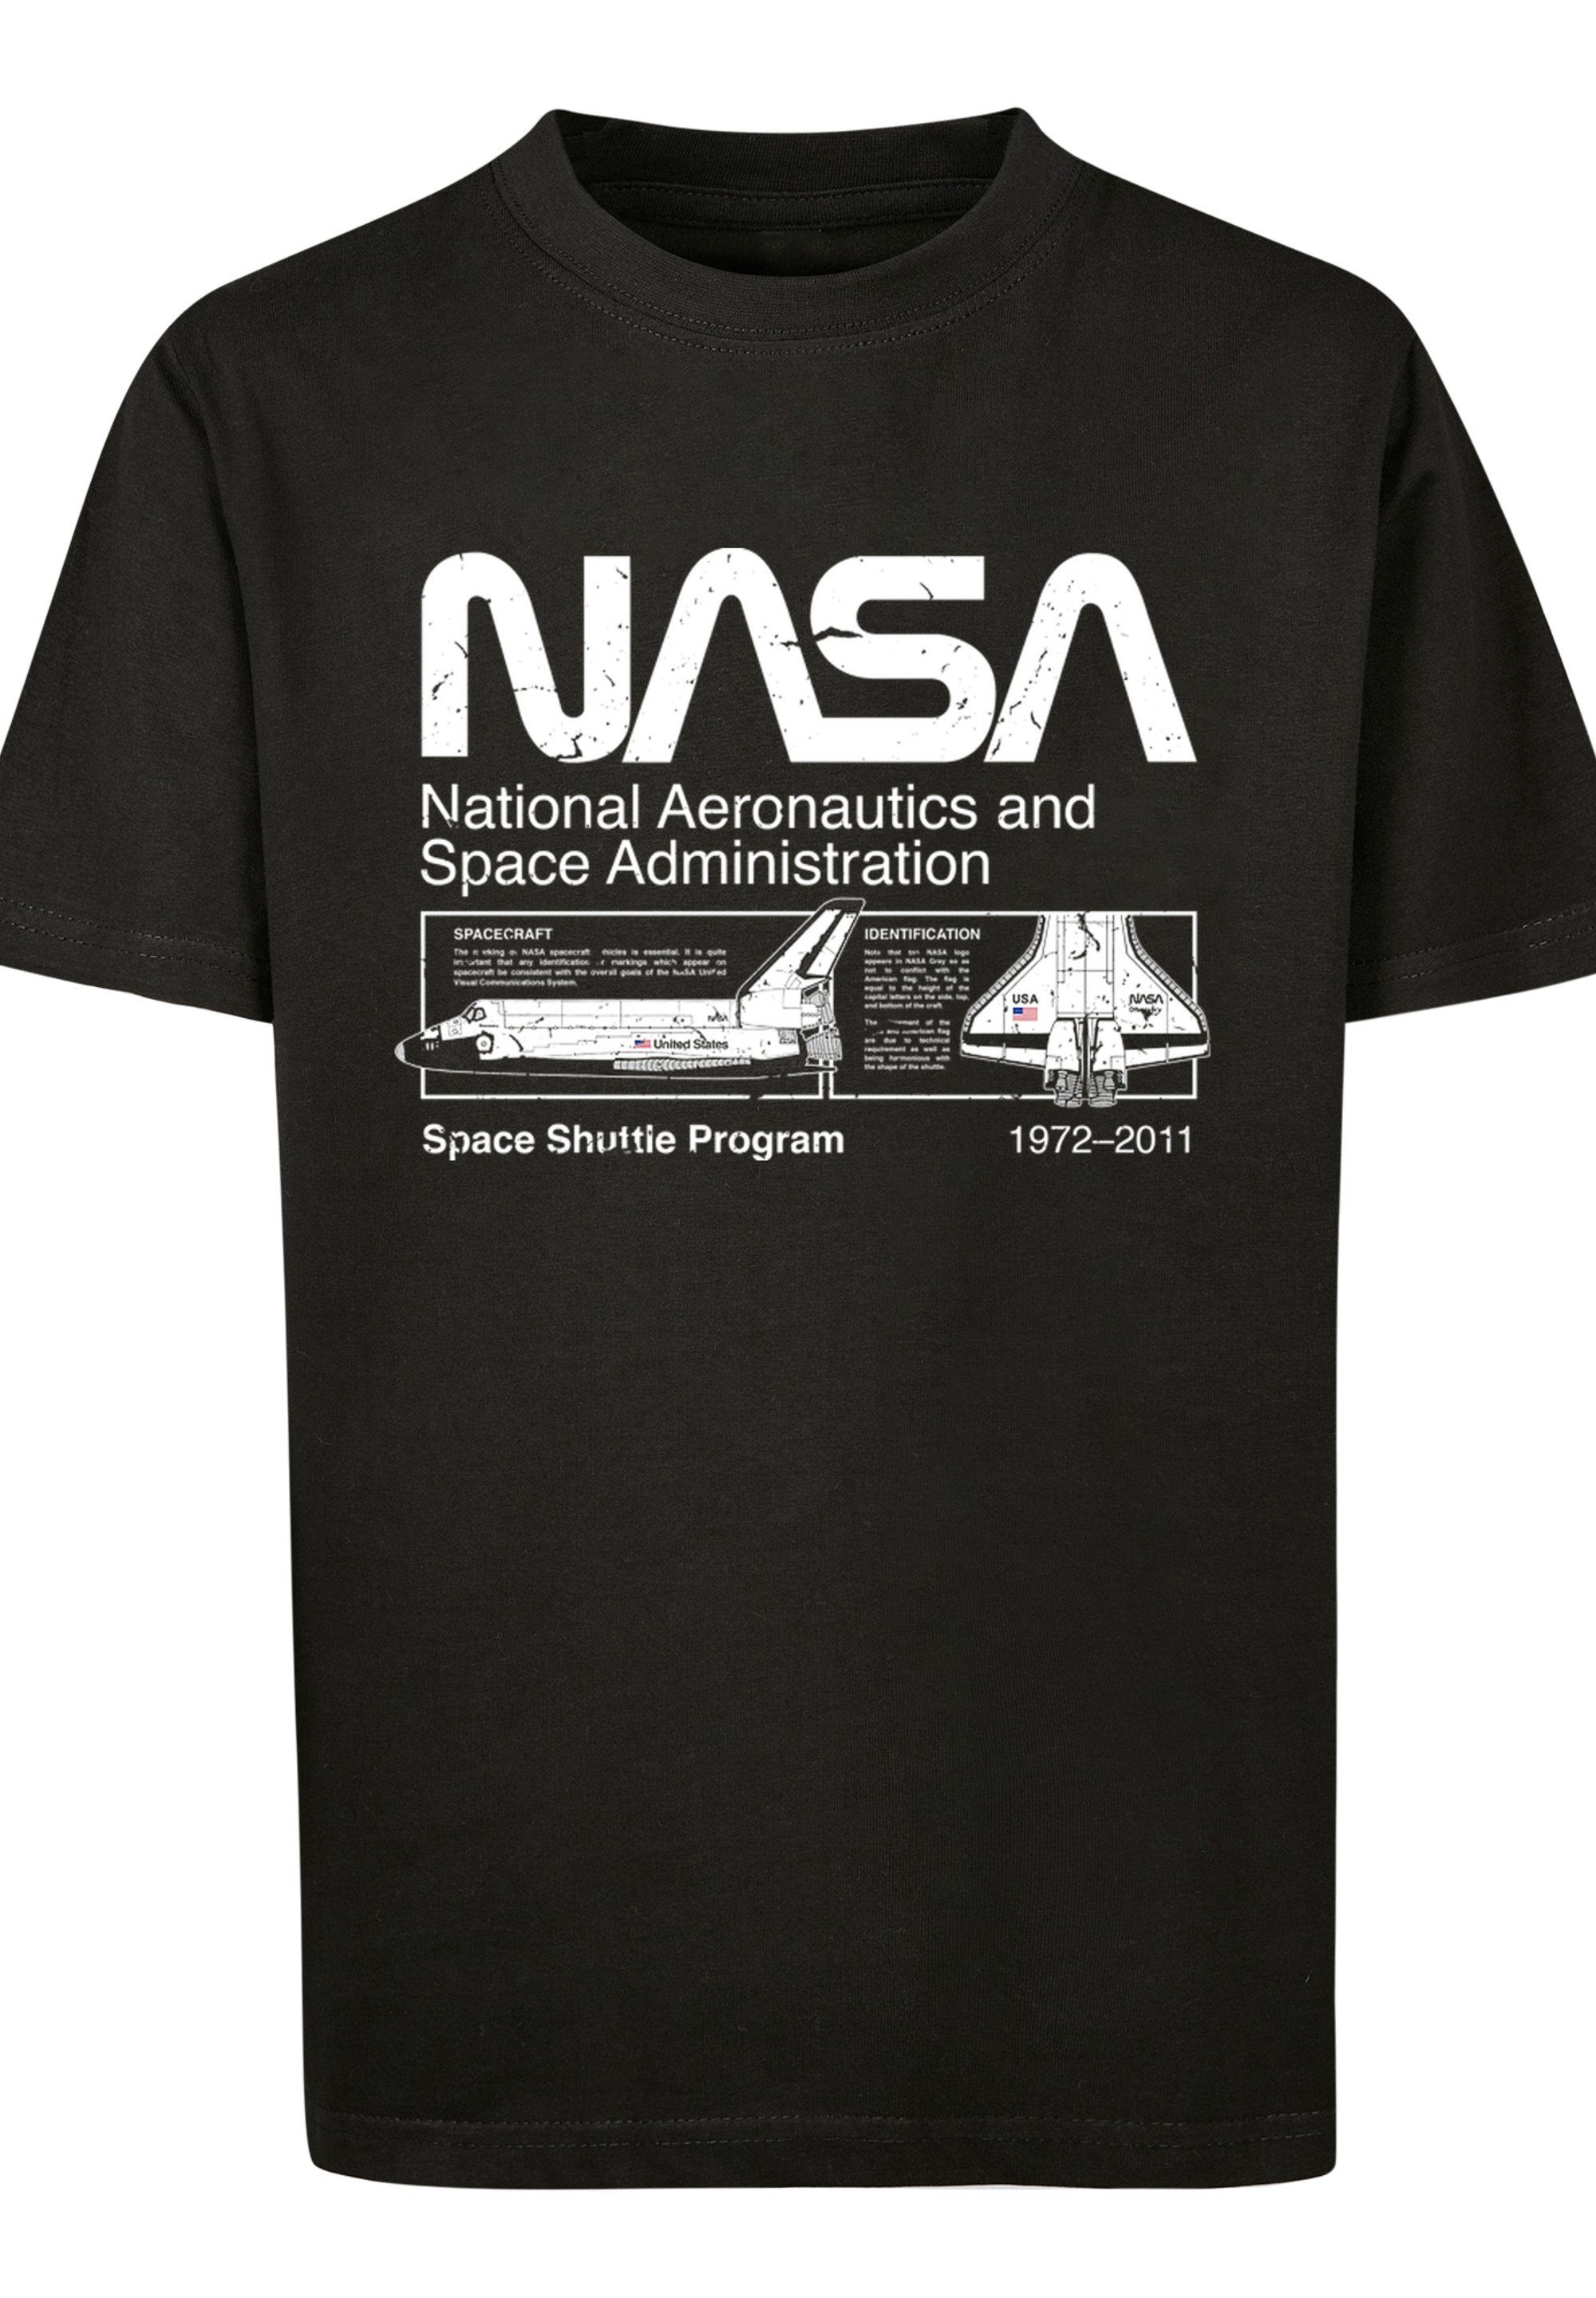 NASA Unisex Black Merch,Jungen,Mädchen,Bedruckt Shuttle Space Classic T-Shirt F4NT4STIC Kinder,Premium